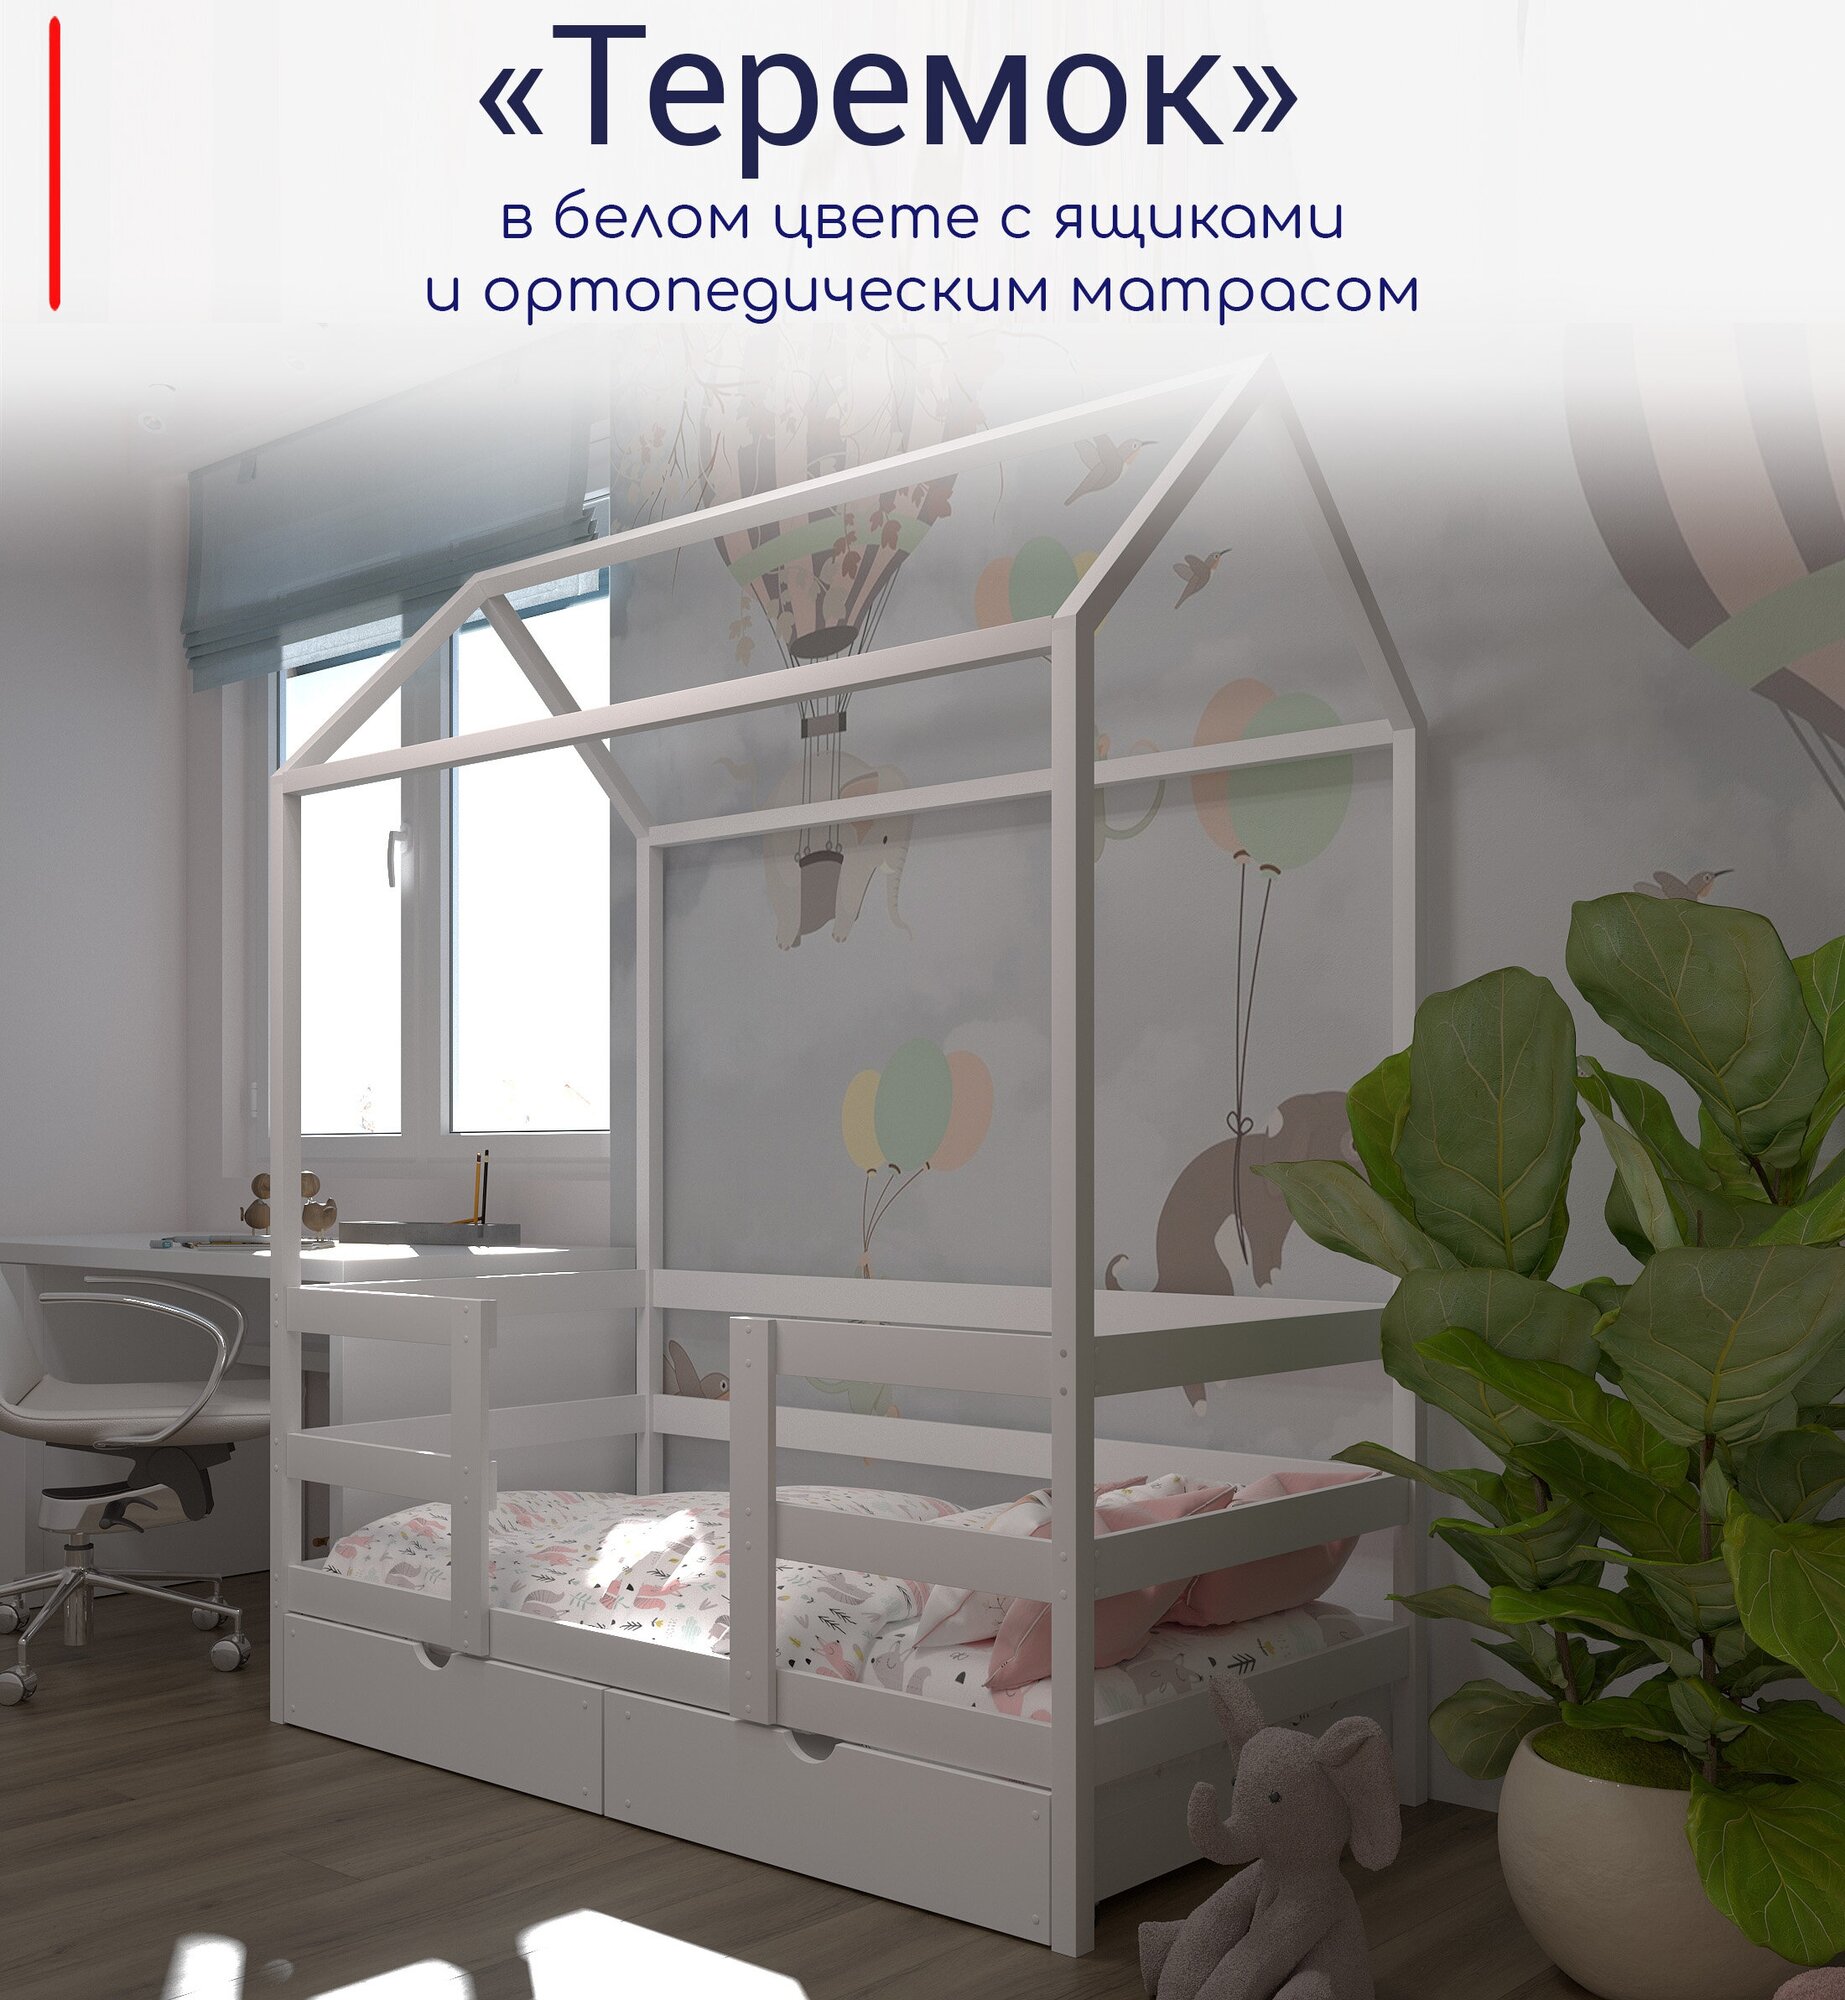 Кровать детская, подростковая "Теремок", 180х90, в комплекте с выкатными ящиками и ортопедическим матрасом, белая, из массива